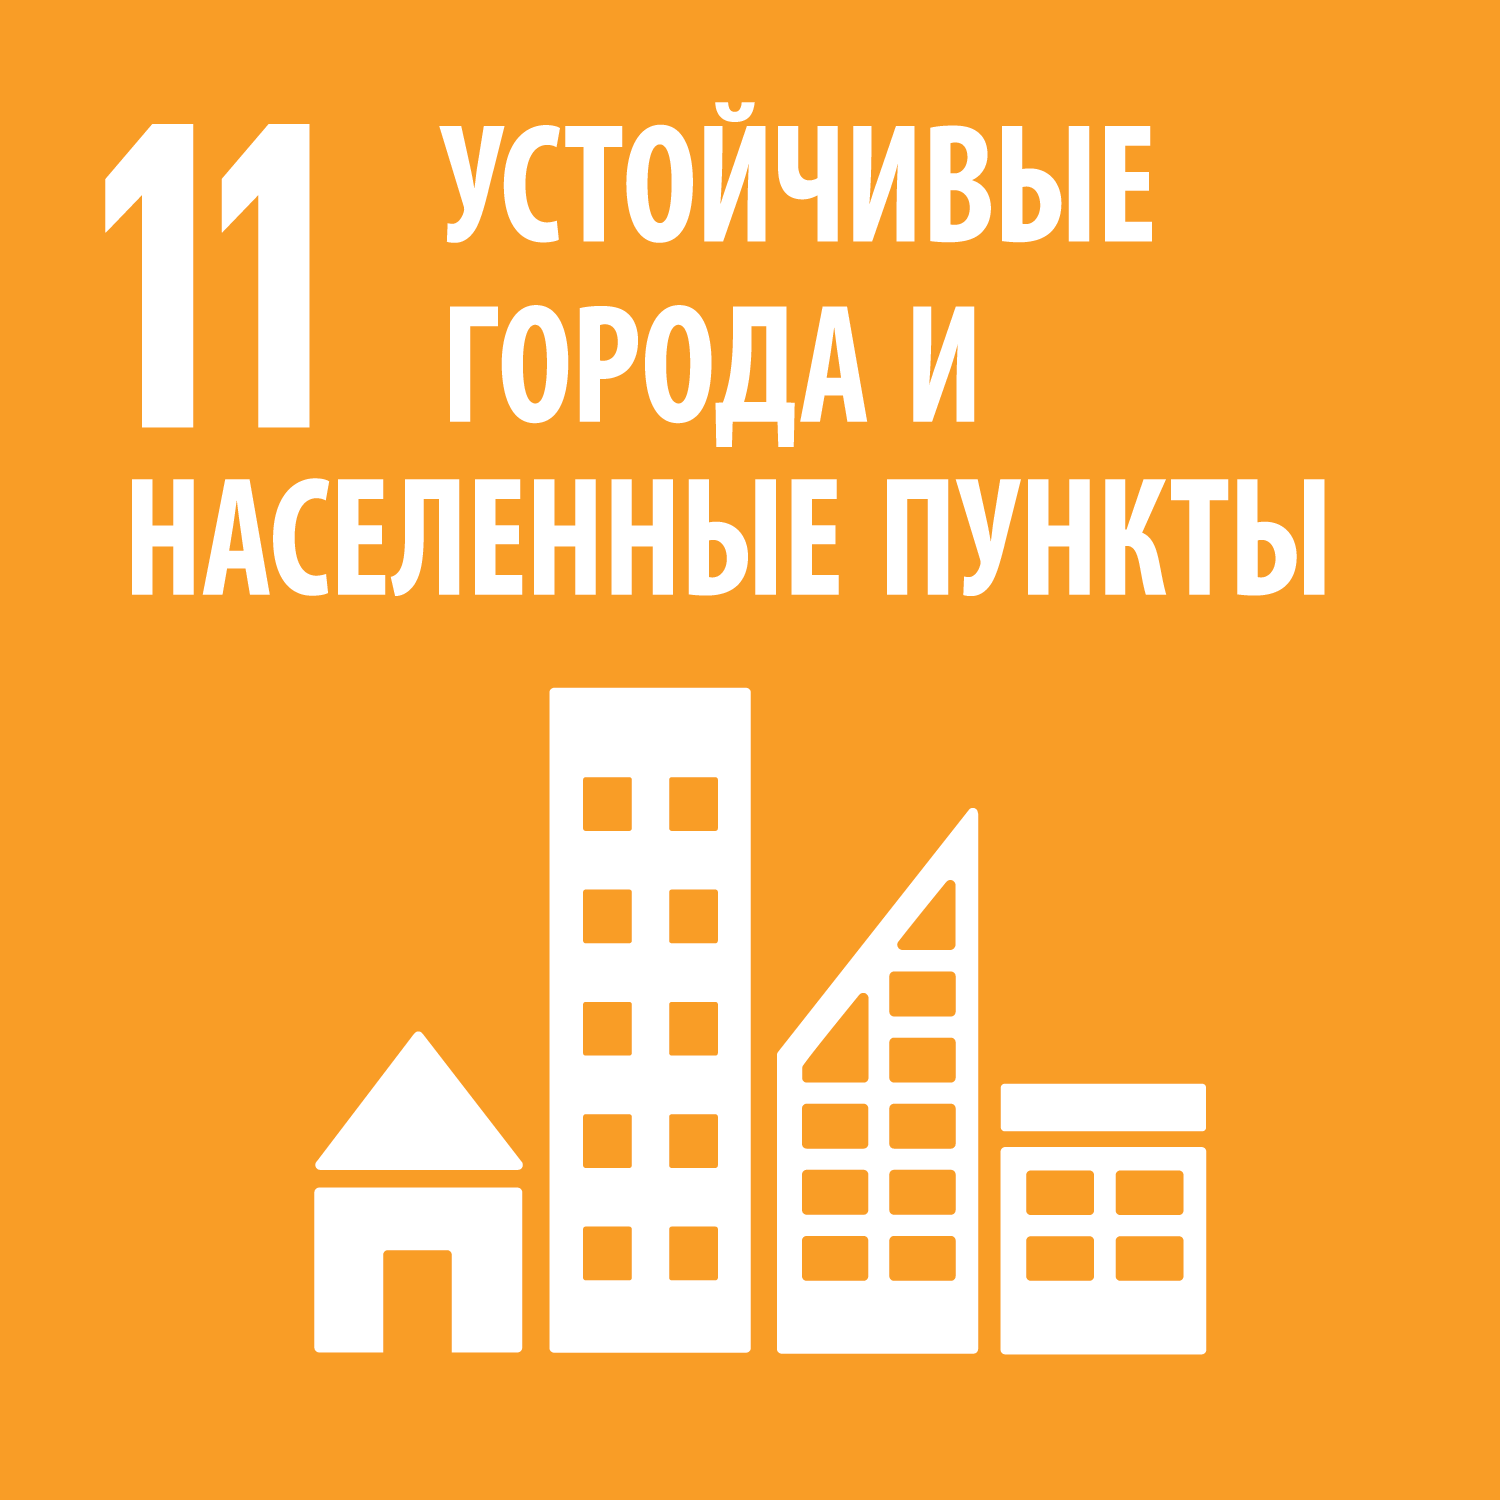 Цель 11: Обеспечение открытости, безопасности, жизнестойкости и экологической устойчивости городов и населенных пунктов